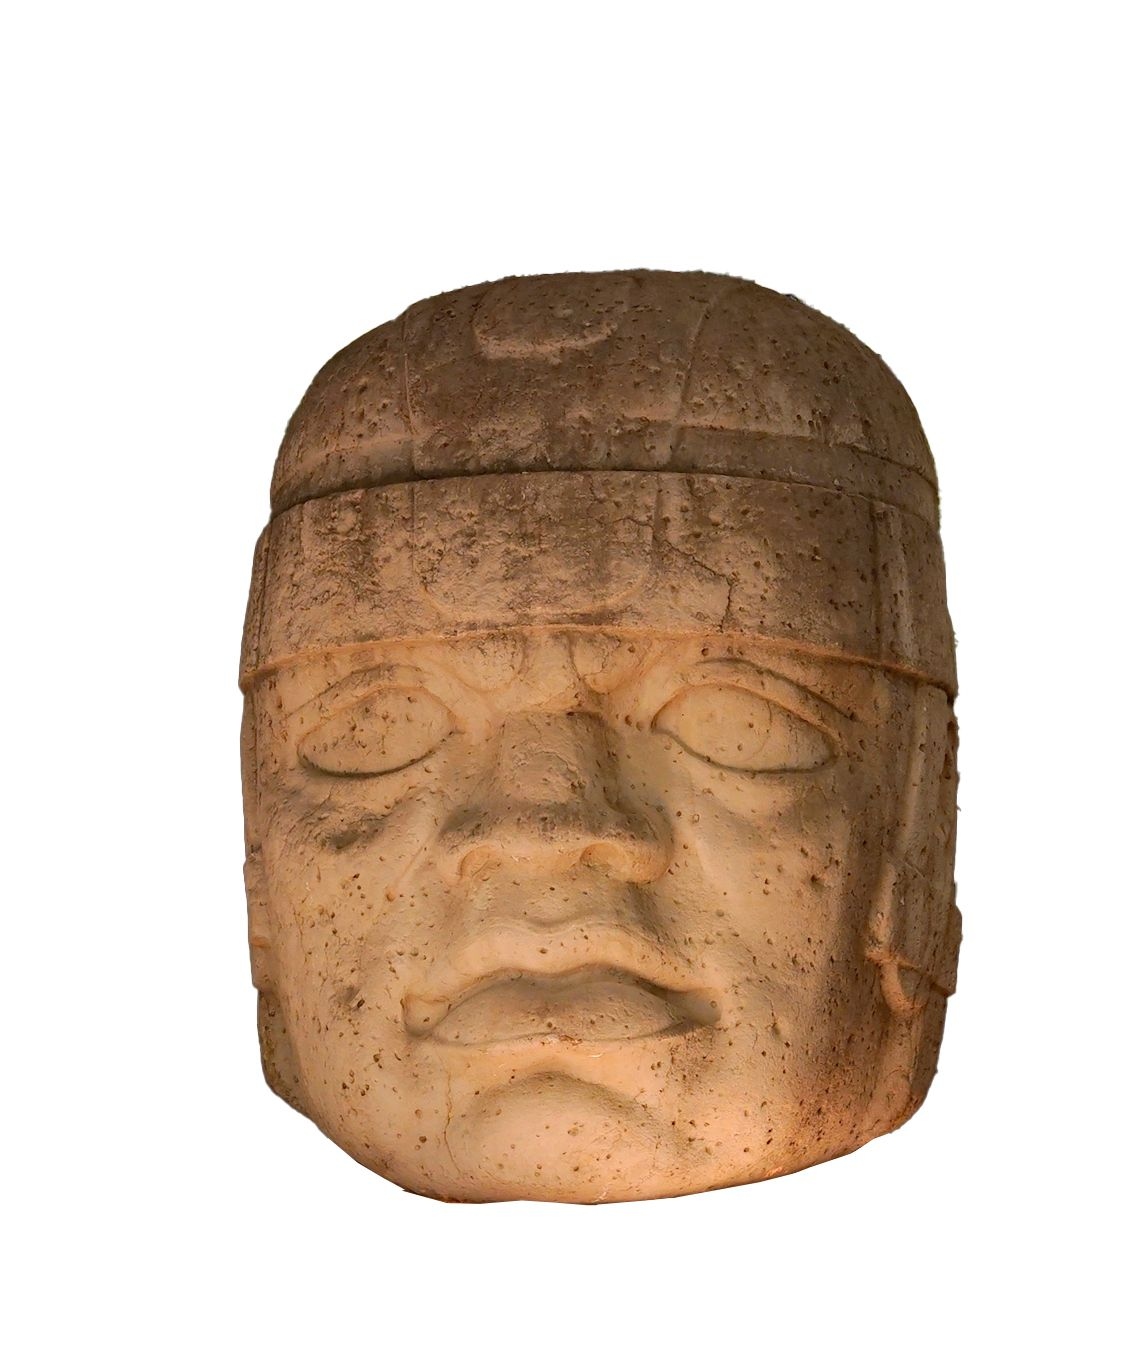 Anuncian próxima exhibición de réplica de la cabeza olmeca monumental “El Rey” en Vietnam